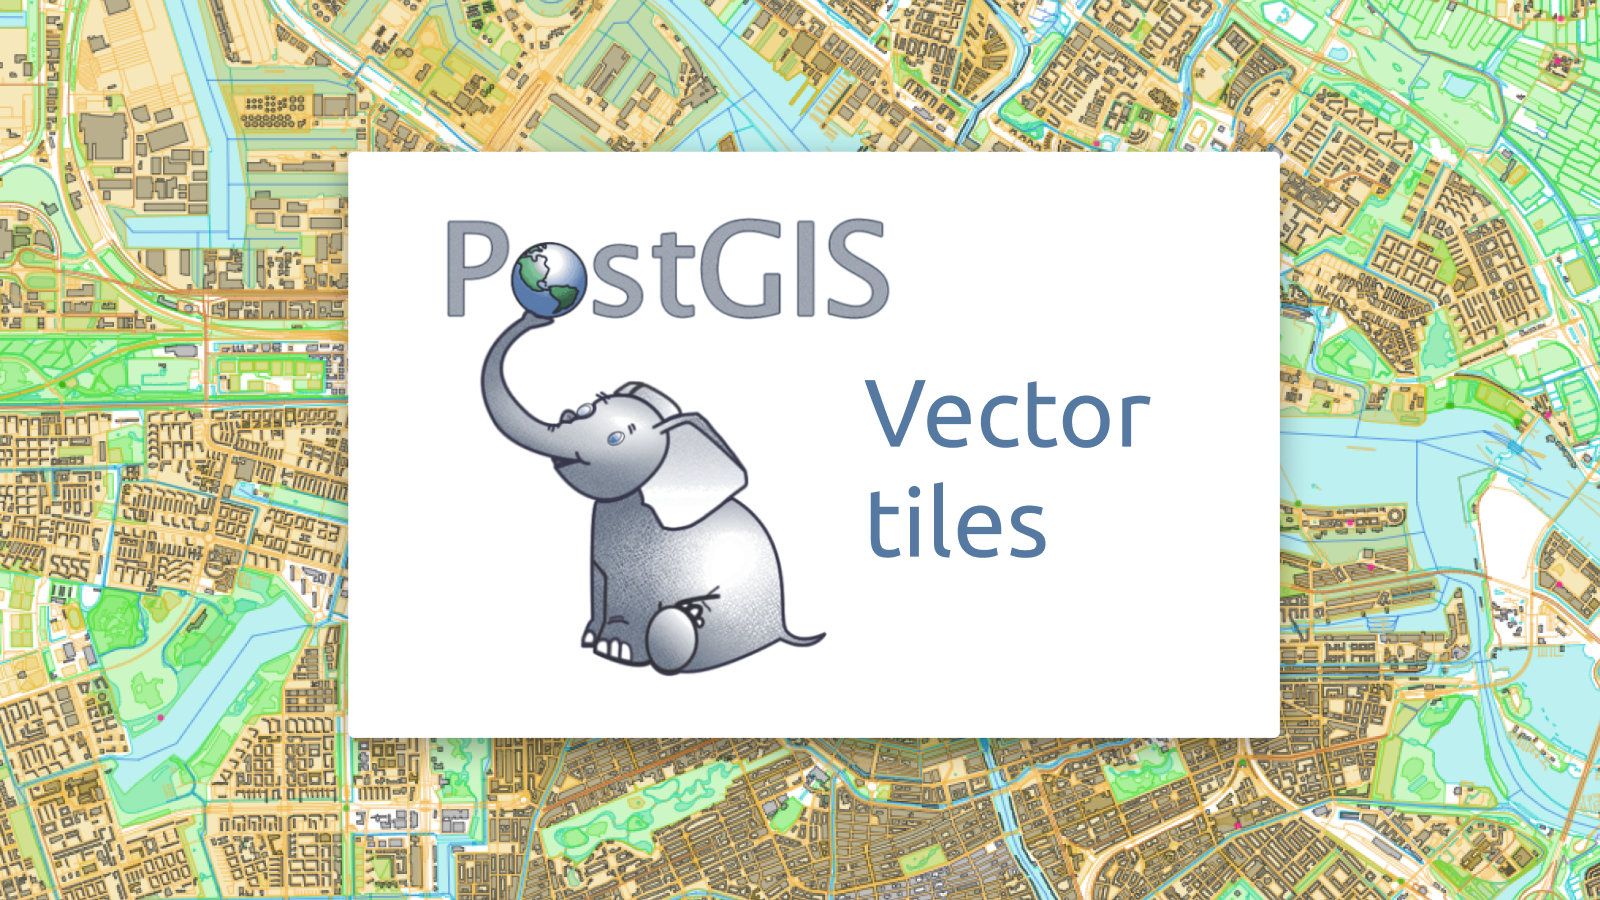 Maps from PostGIS offline